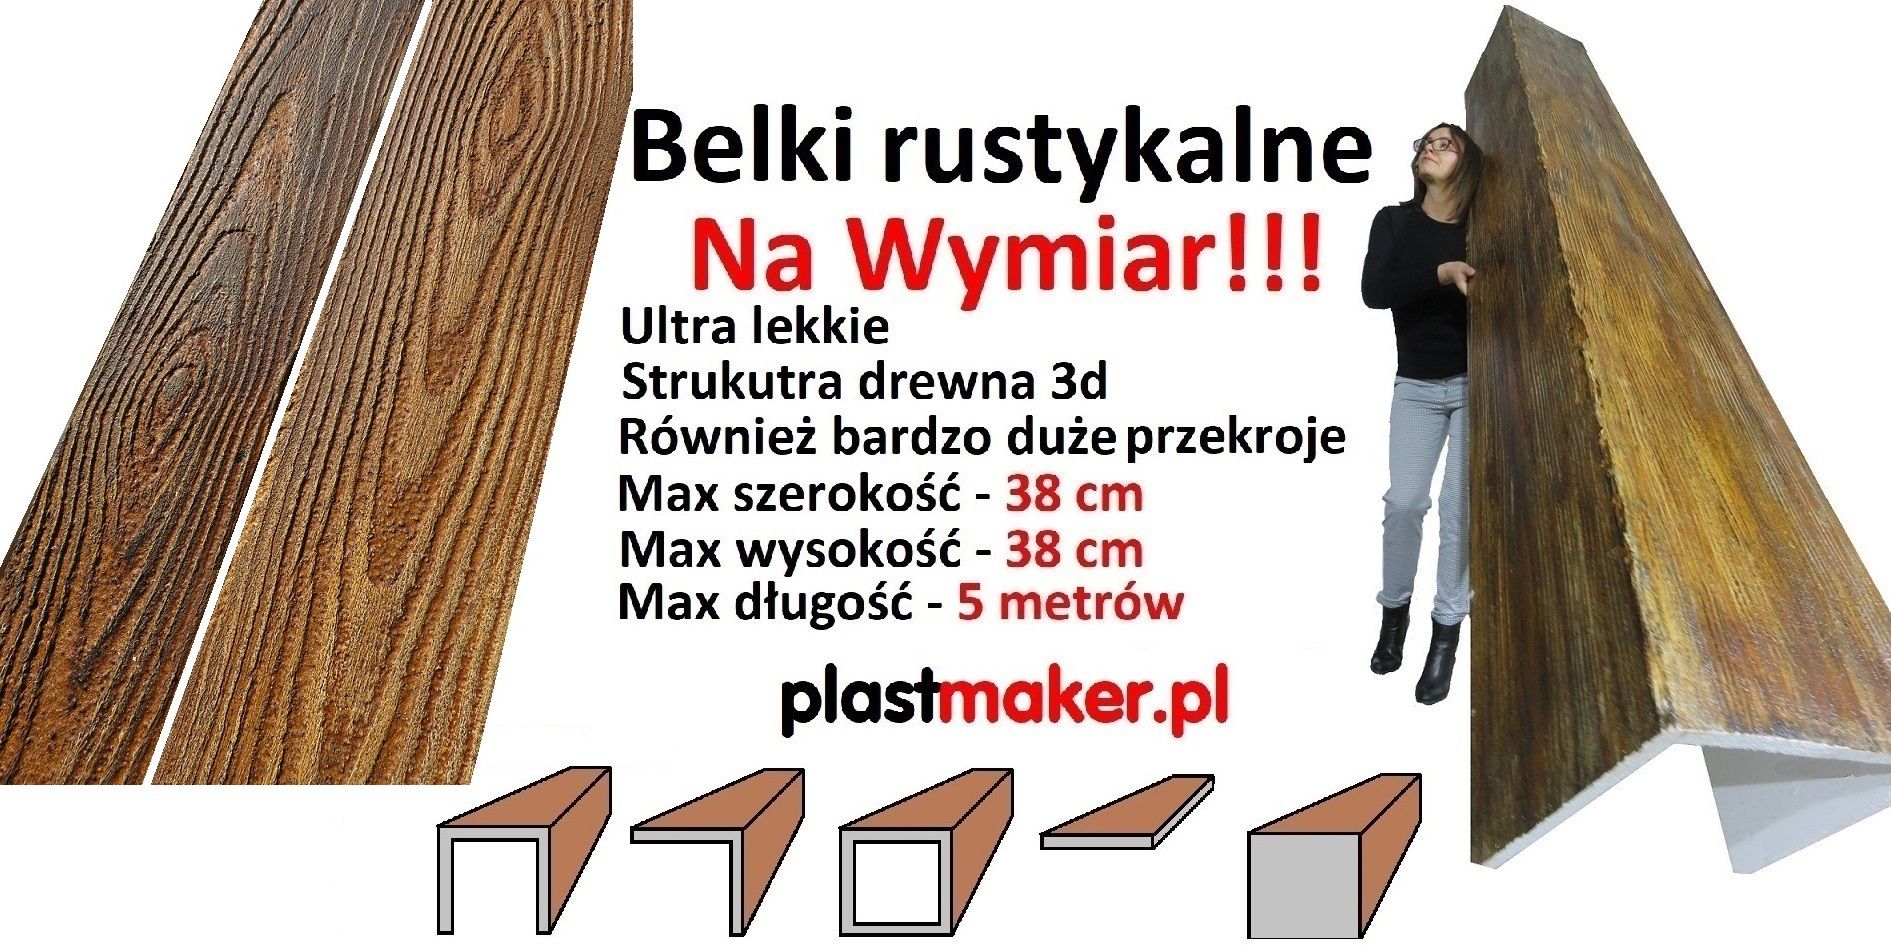 Belki rustykalne Na Wymiar PLASTMAKER- Belki na suficie bydgoszcz - Zdjęcie 1